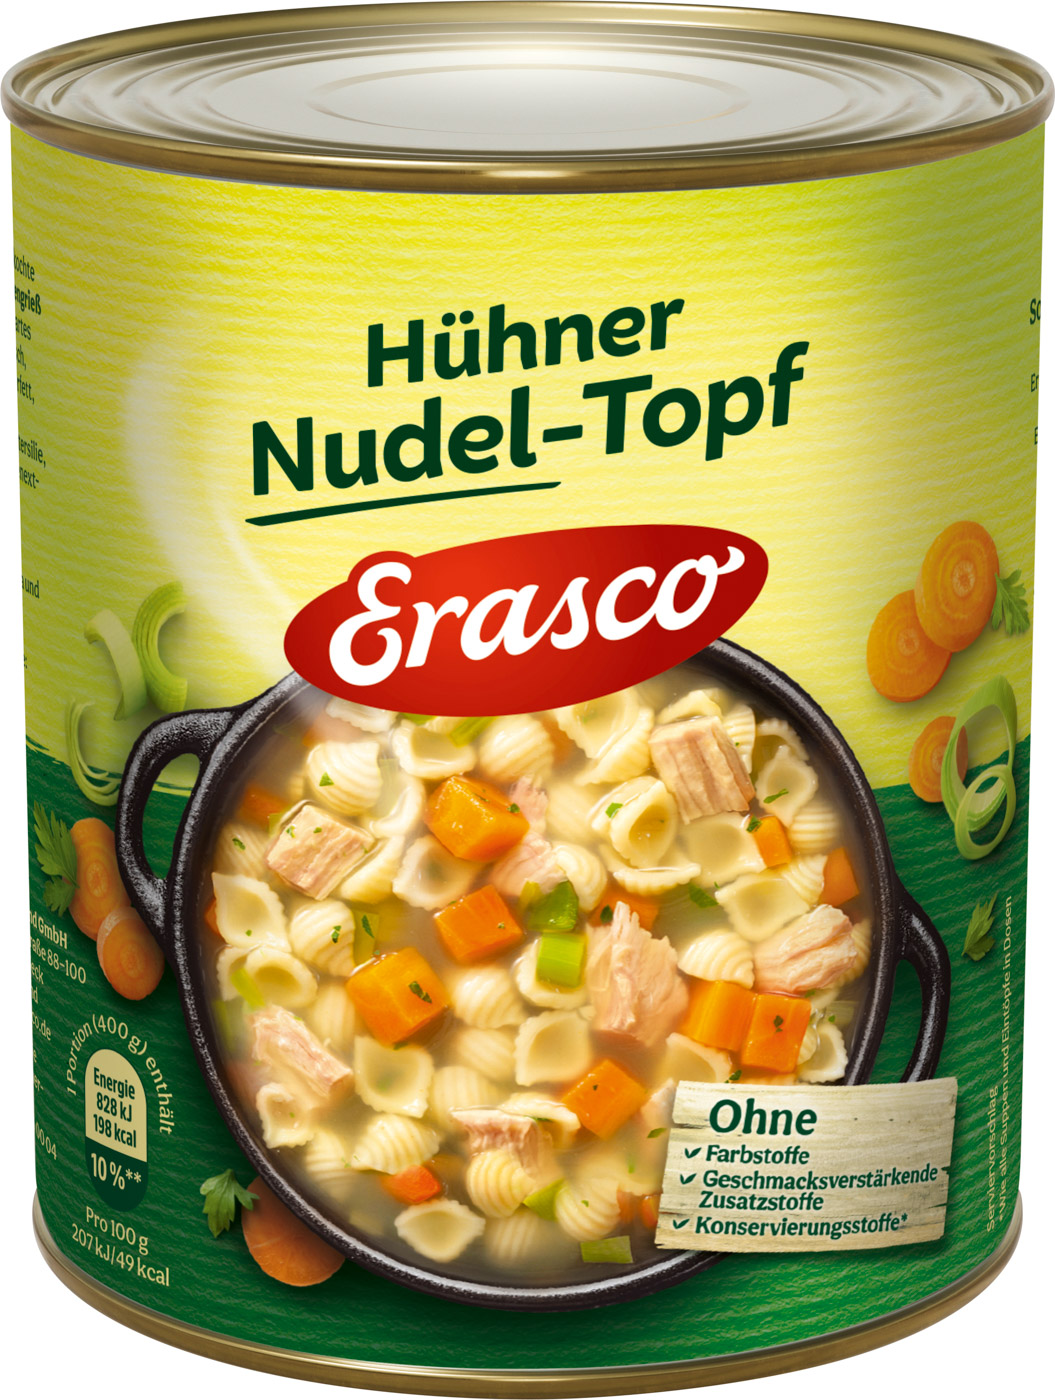 Erasco Hühner Nudel-Topf 800G